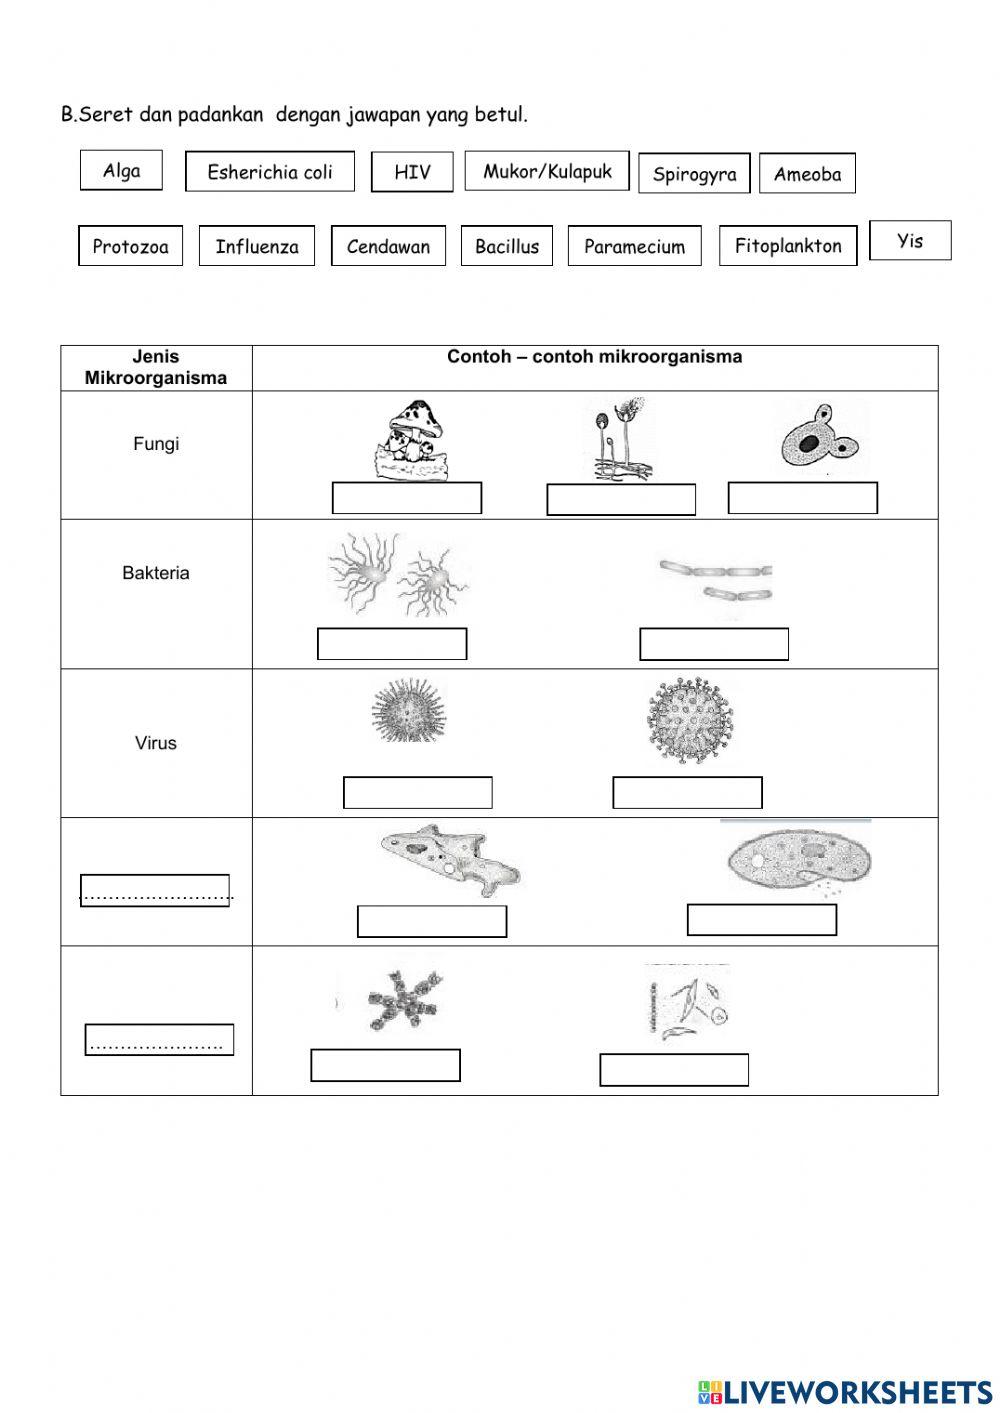 SAINS T6: MIKROORGANISMA-Jenis mikroorganisma